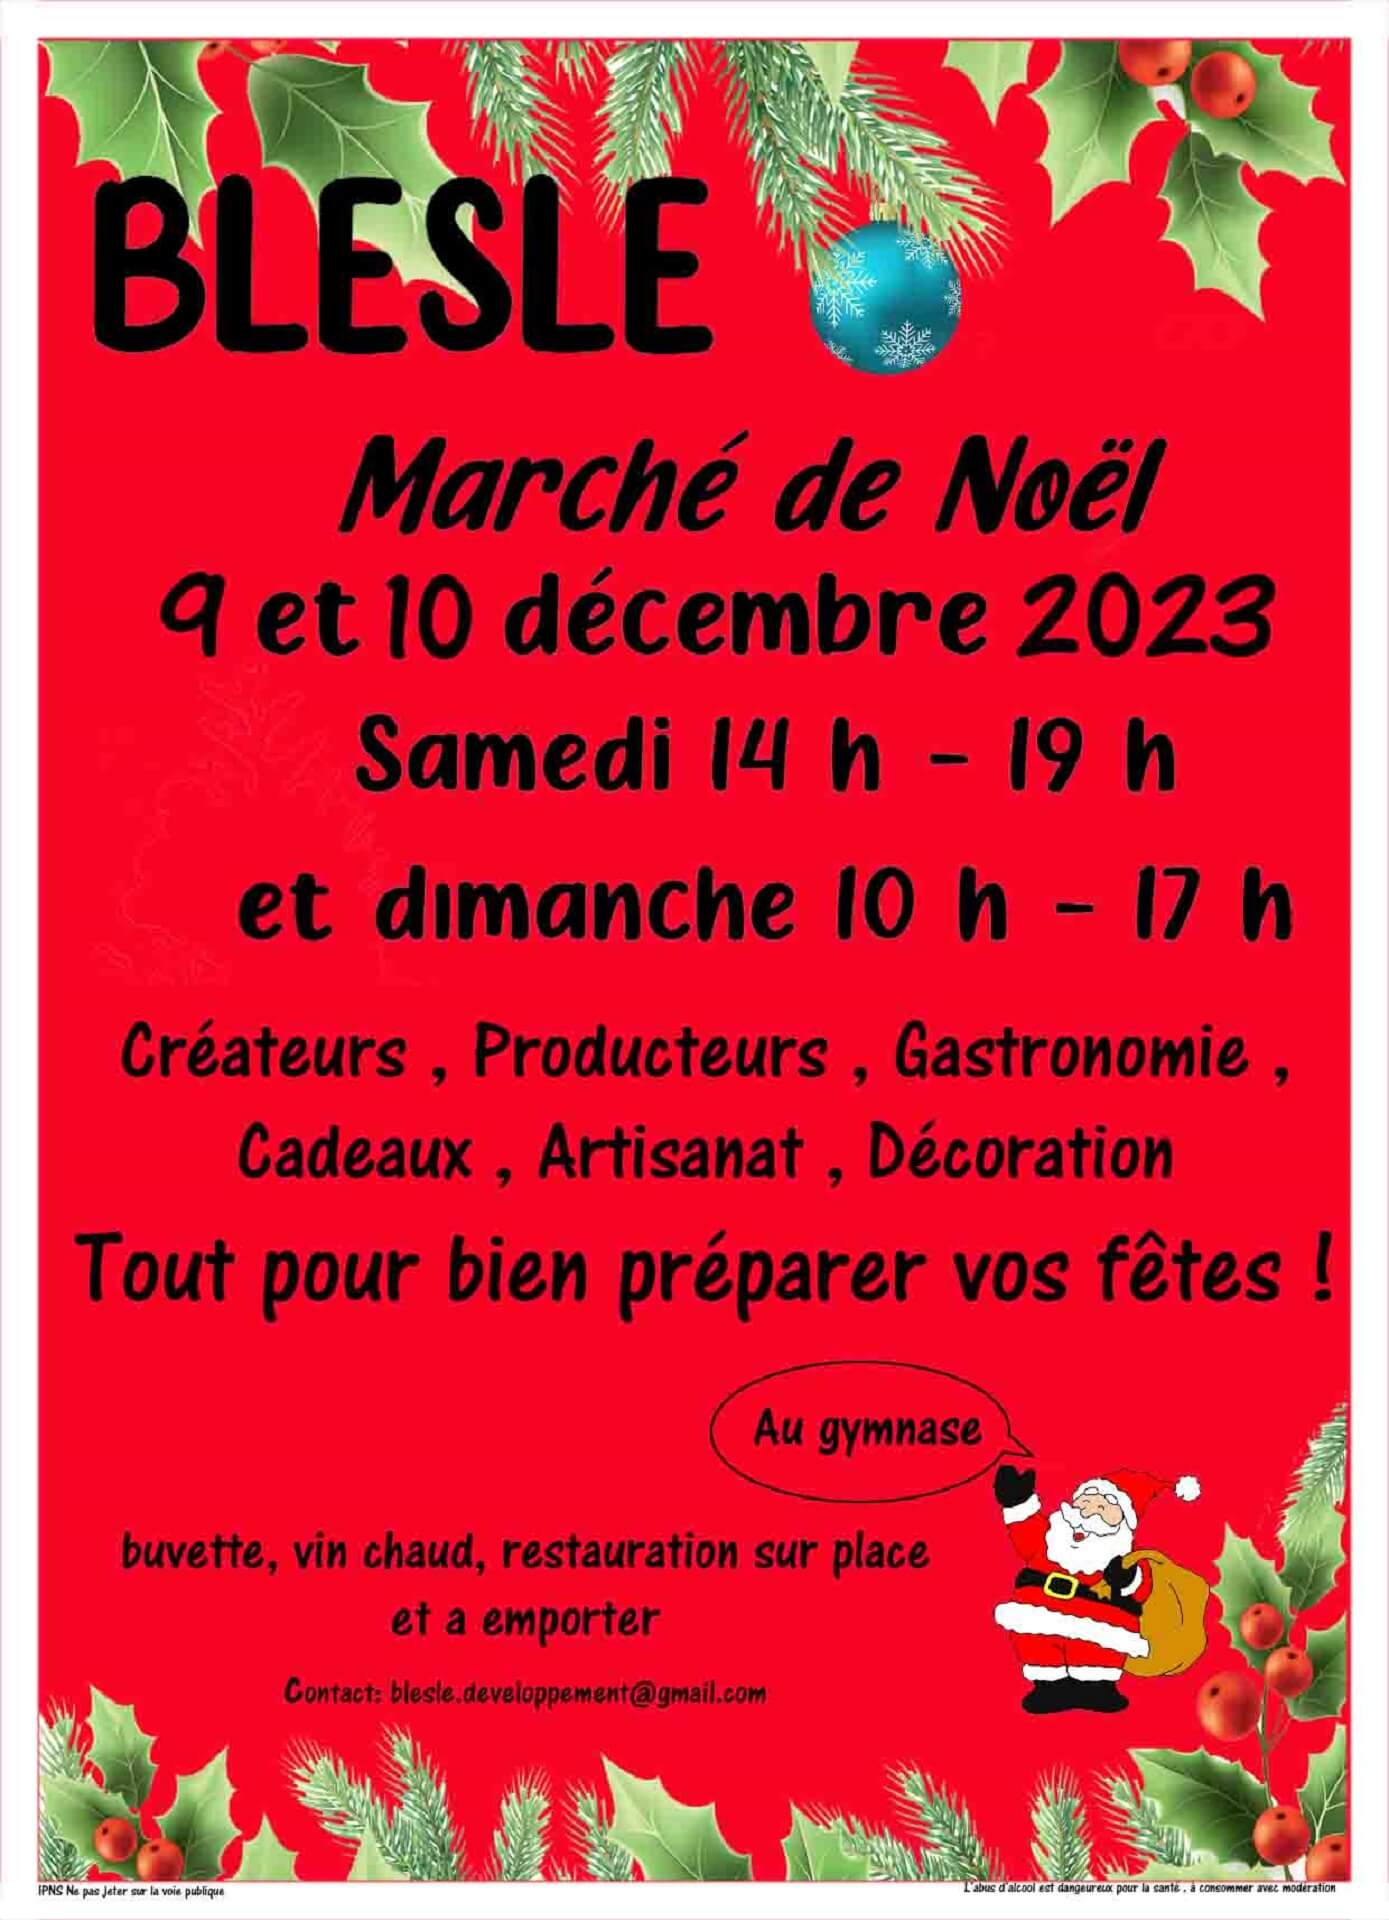 Marché de Noël Blesle